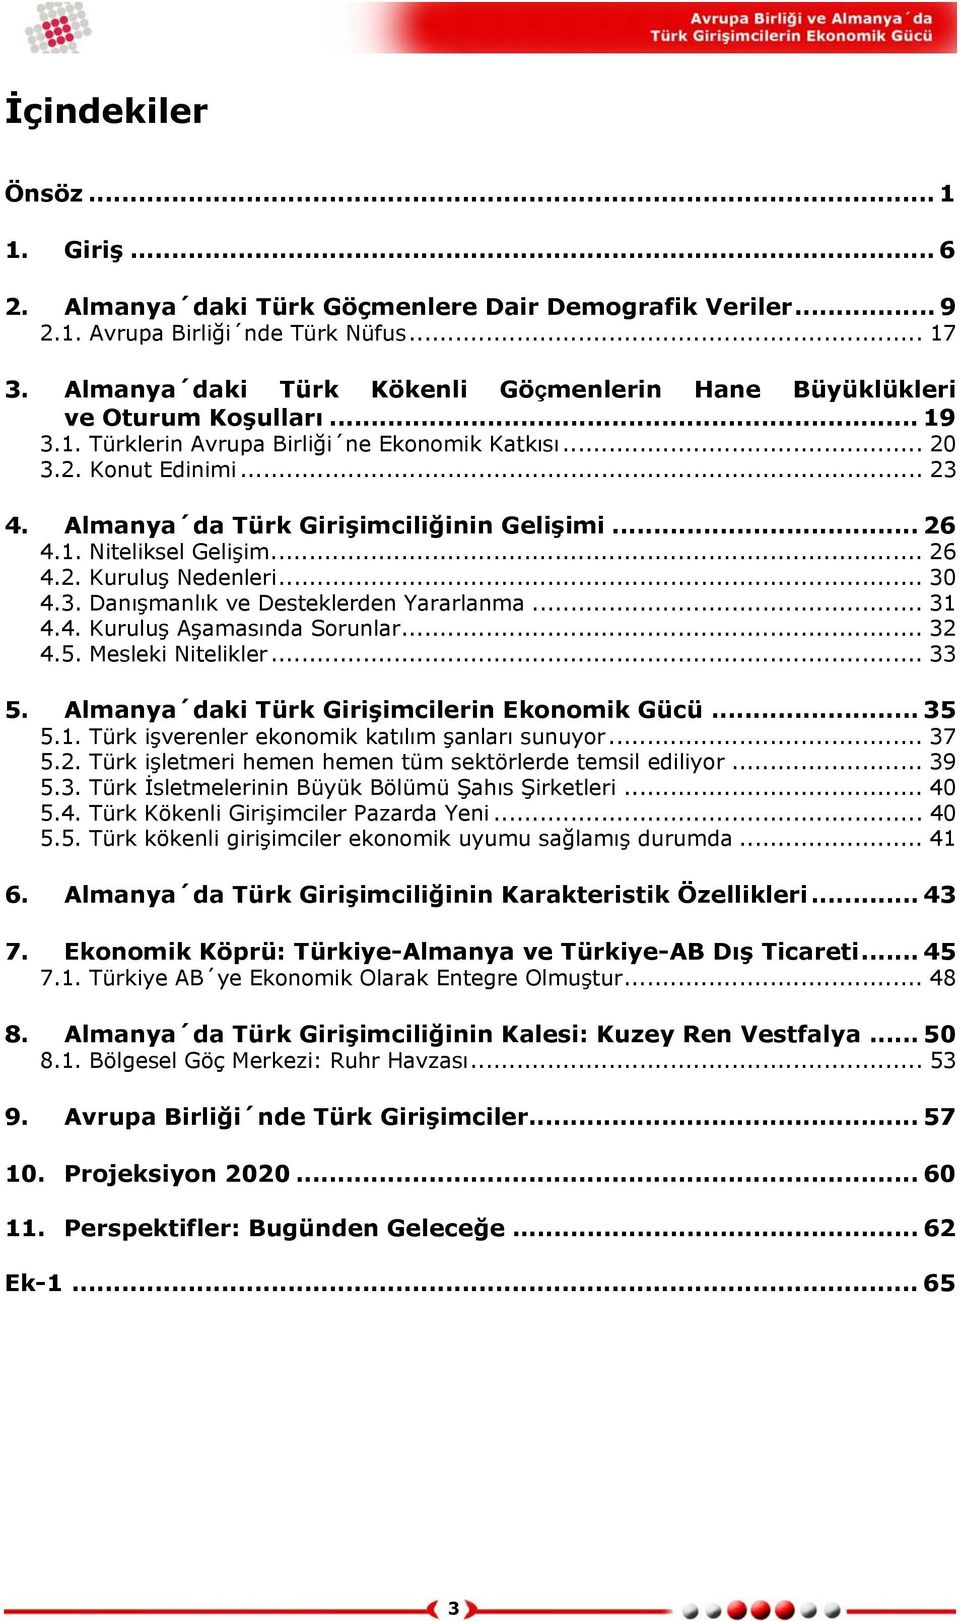 Almanya da Türk Girişimciliğinin Gelişimi... 26 4.1. Niteliksel Gelişim... 26 4.2. Kuruluş Nedenleri... 30 4.3. Danışmanlık ve Desteklerden Yararlanma... 31 4.4. Kuruluş Aşamasında Sorunlar... 32 4.5.